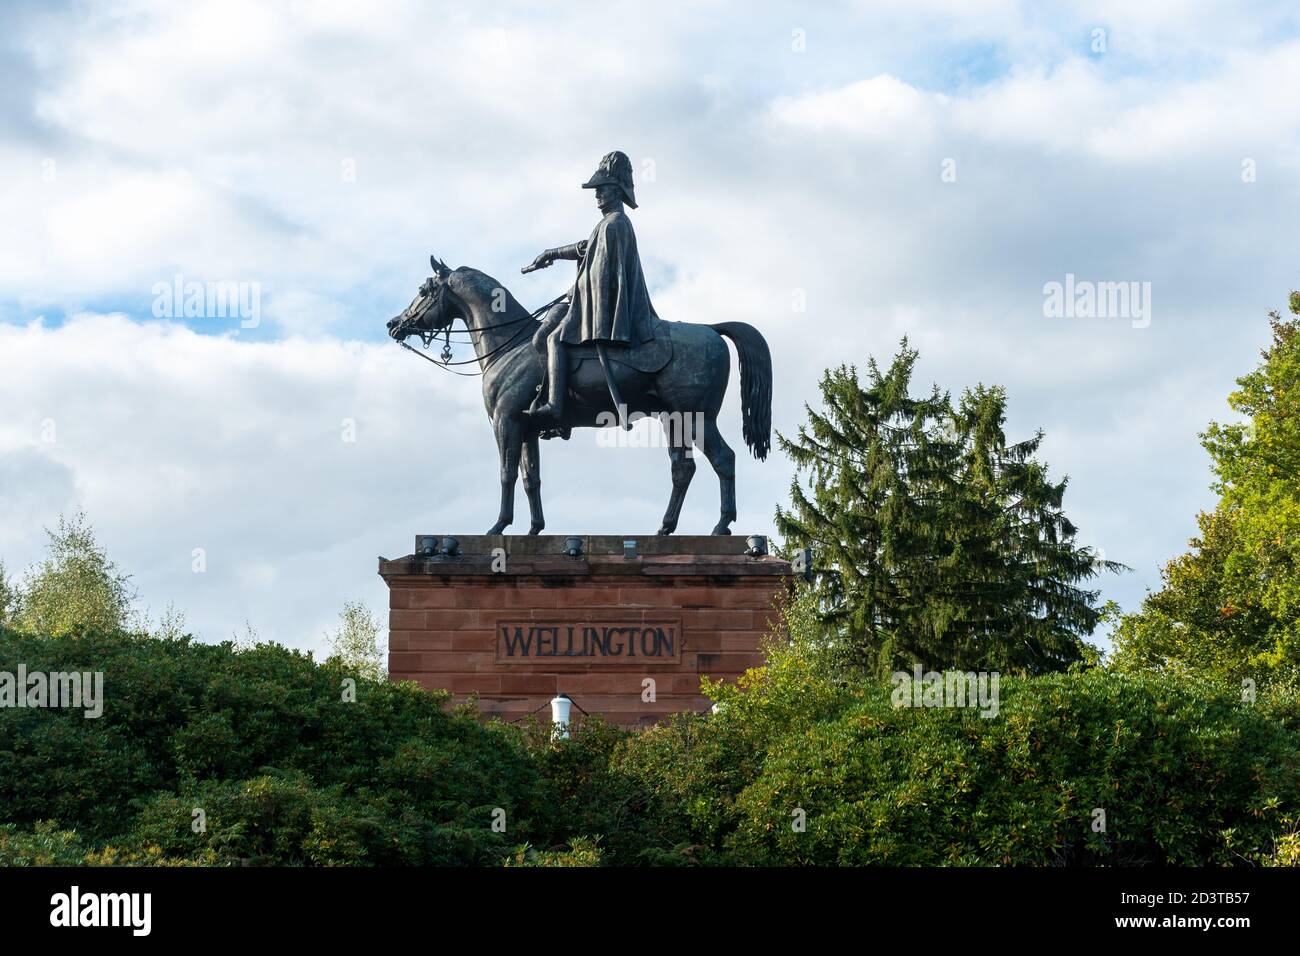 Equestrian statue of the Duke of Wellington on his horse Copenhagen, huge bronze statue in Aldershot, Hampshire, UK Stock Photo